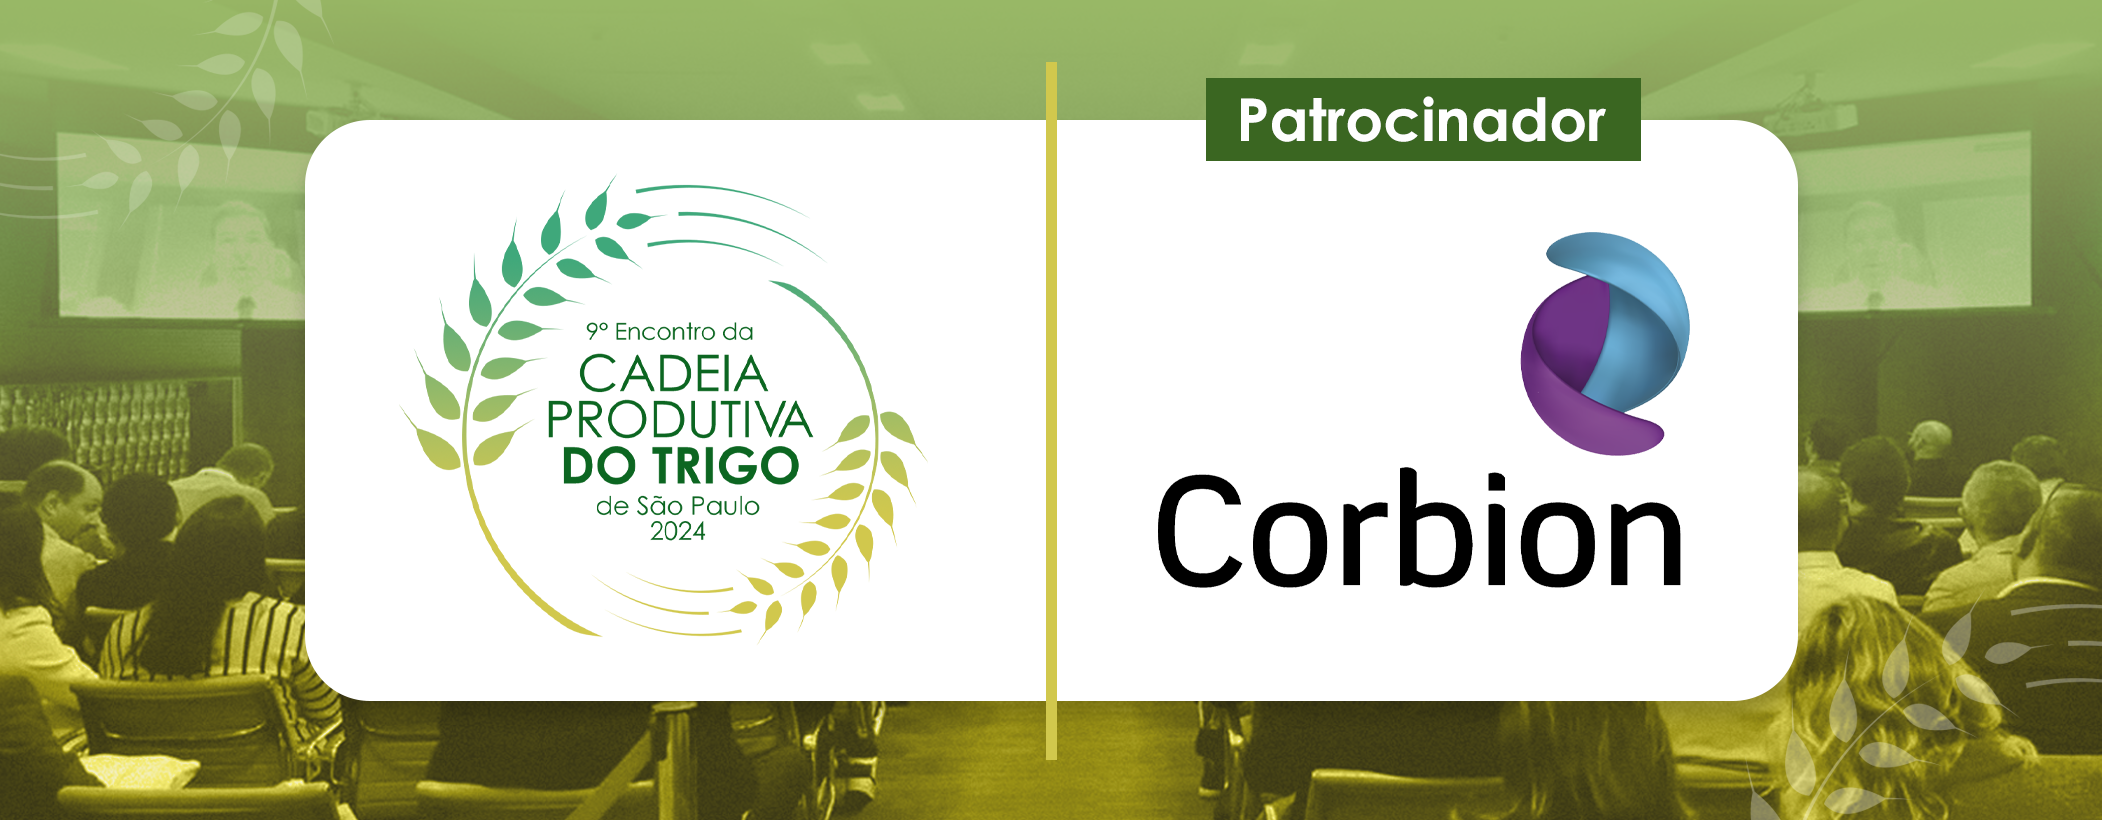 Patrocinador - Corbion